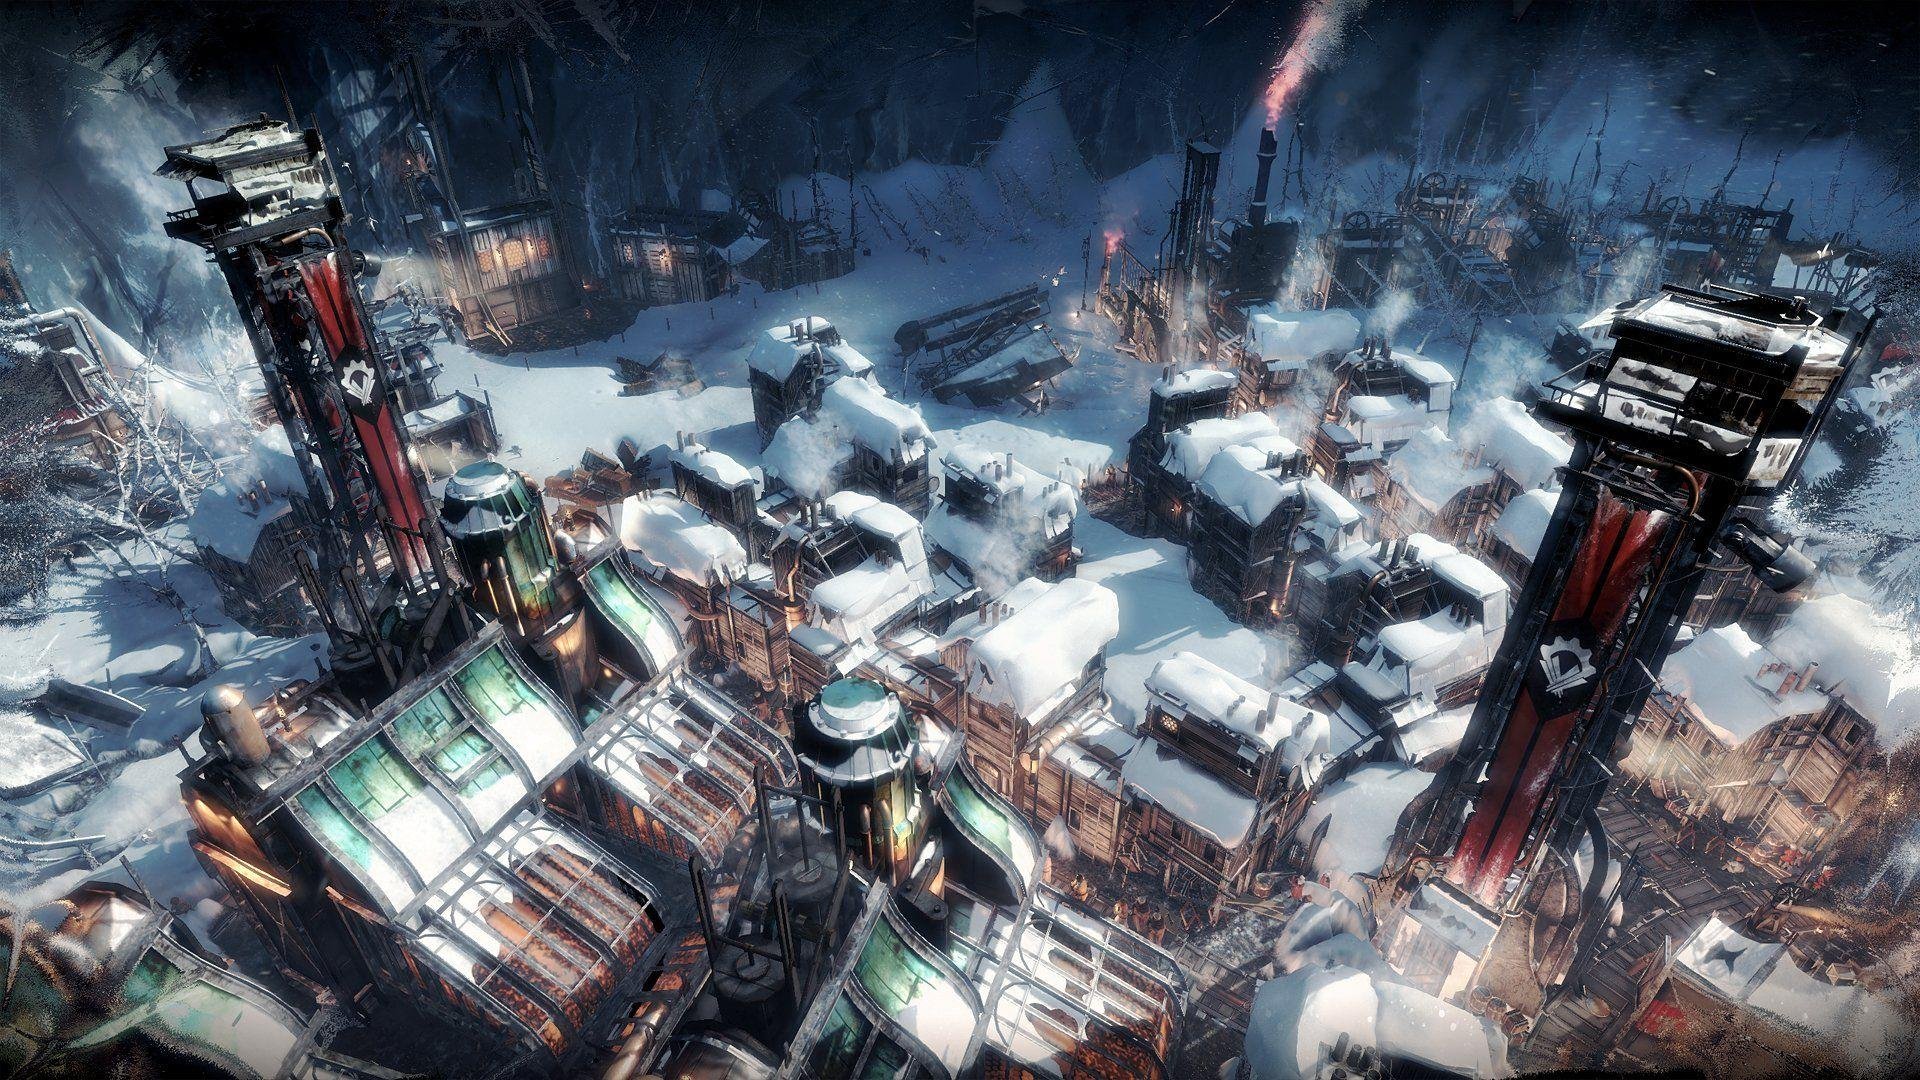 Game de sobrevivência Solarpunk é anunciado para PC e consoles - Adrenaline